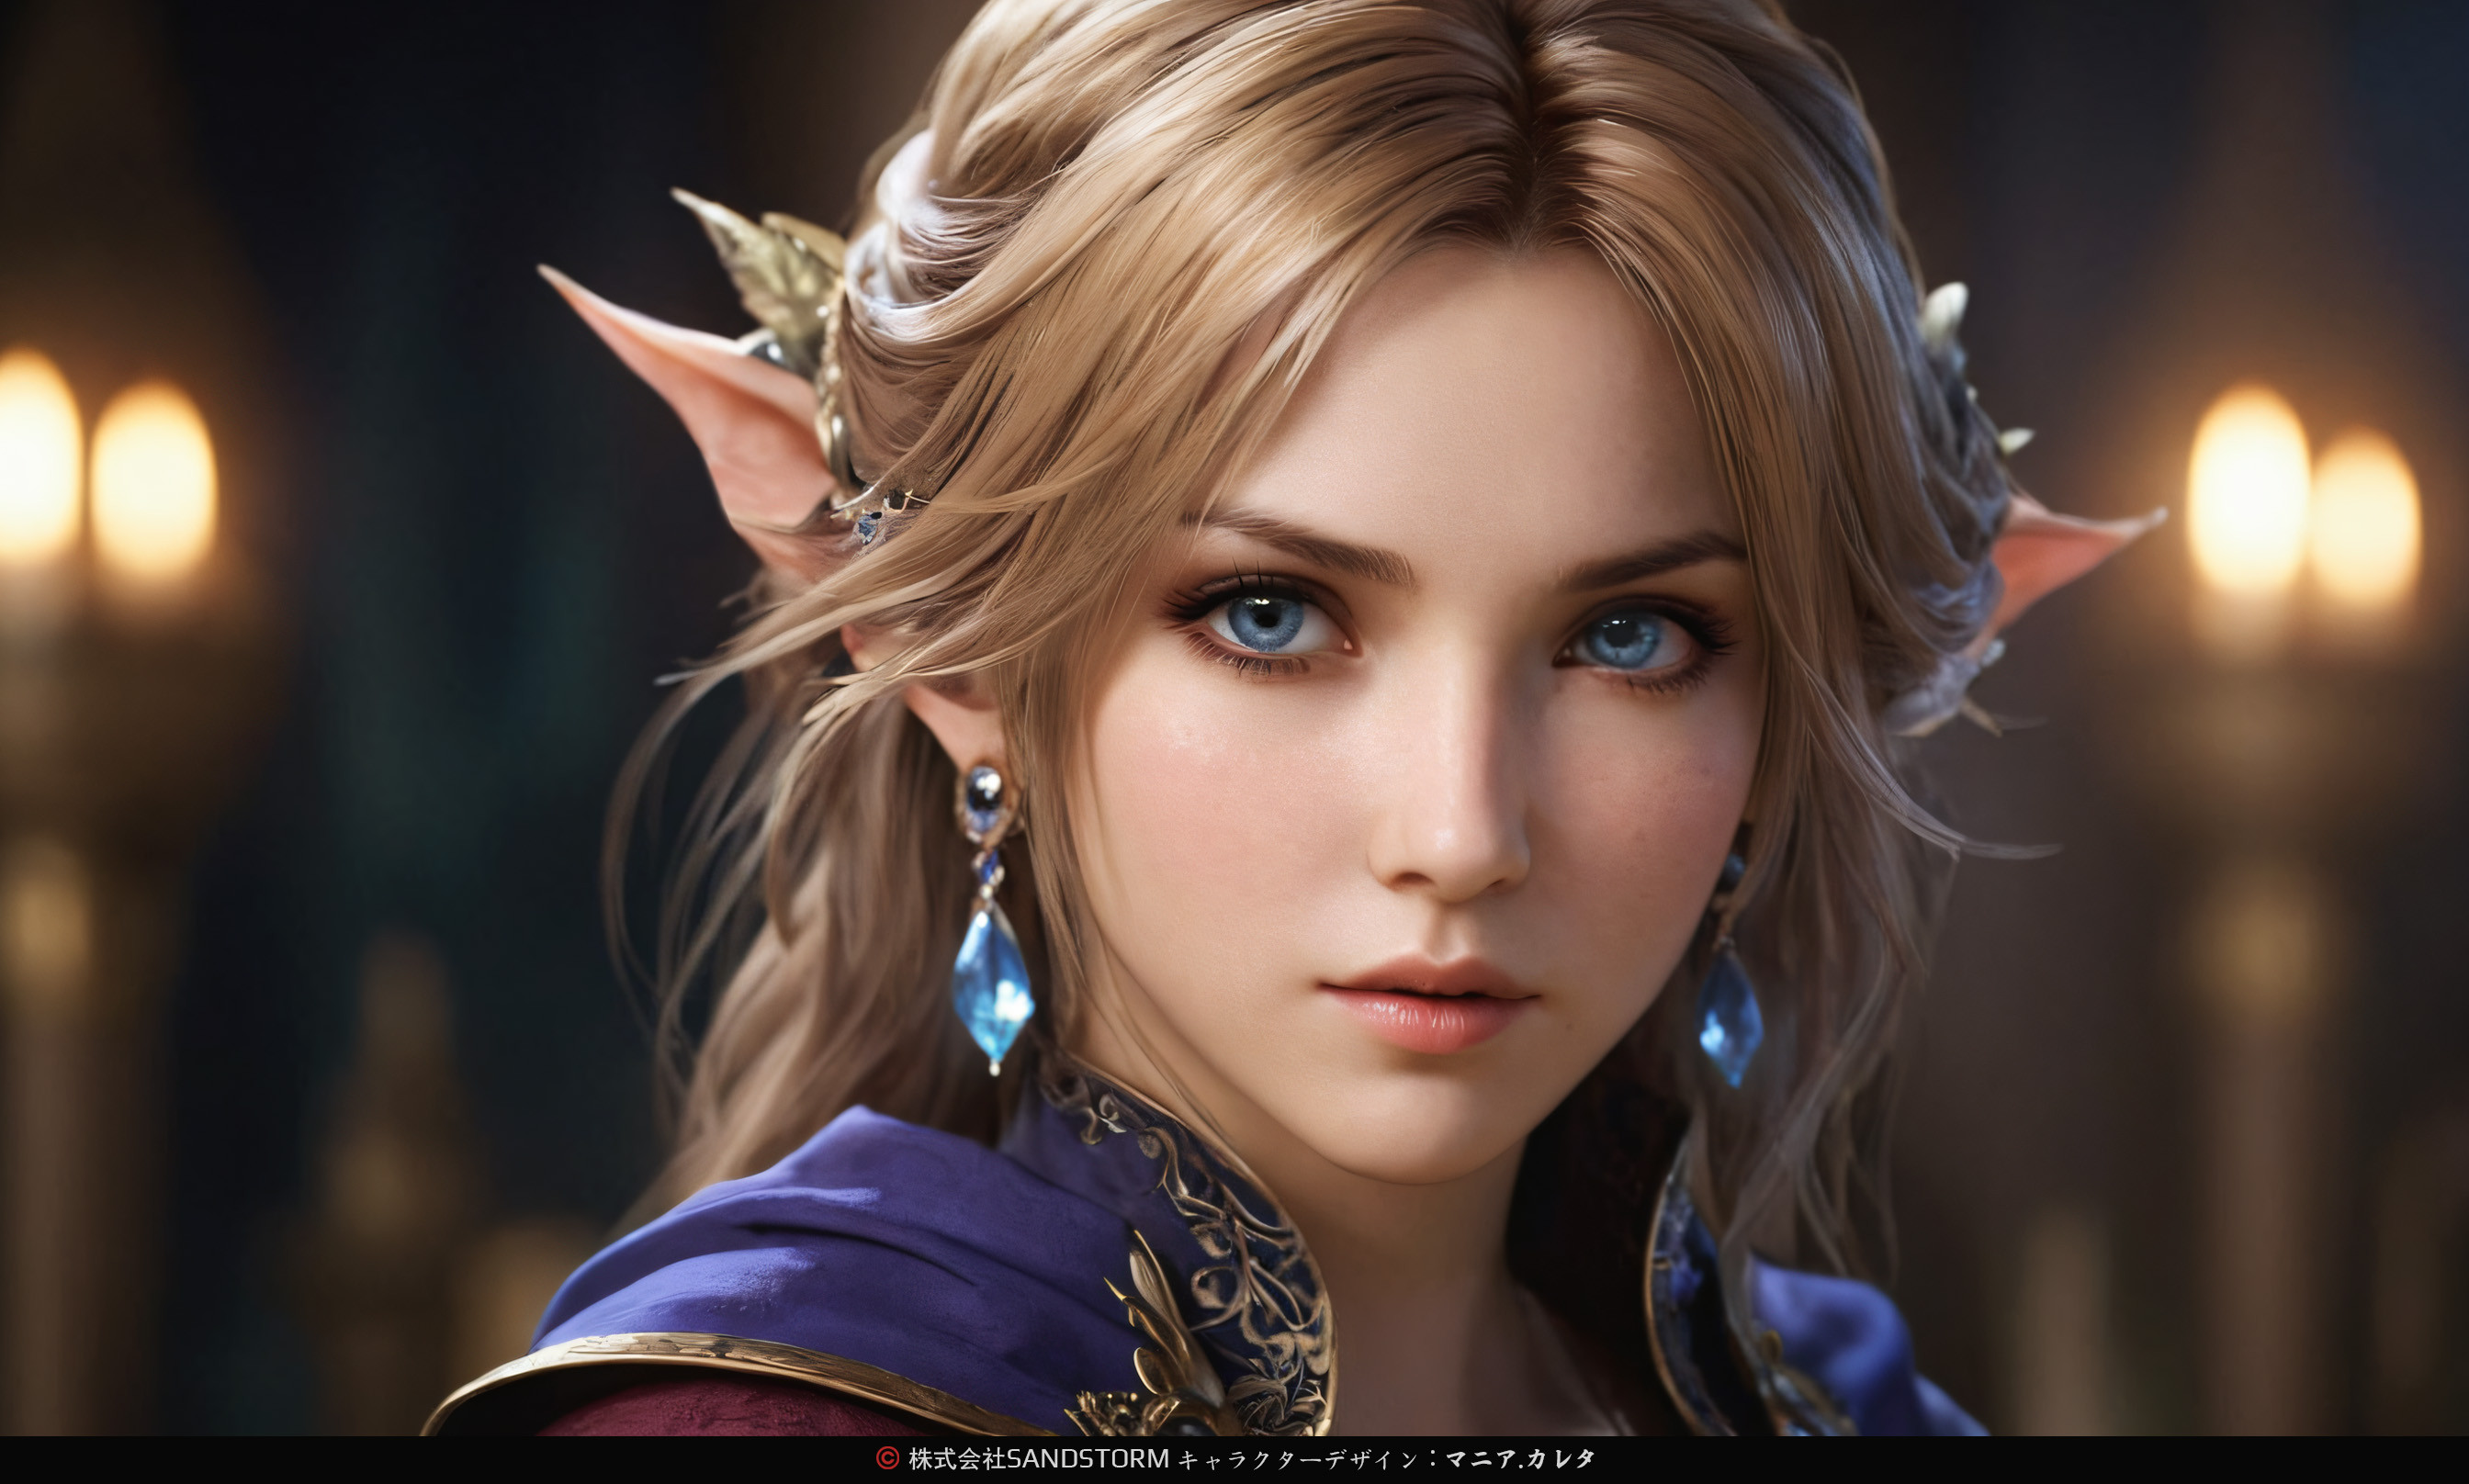 Mania Carta CGi Blue Eyes Blonde Portrait Earring 2688x1616